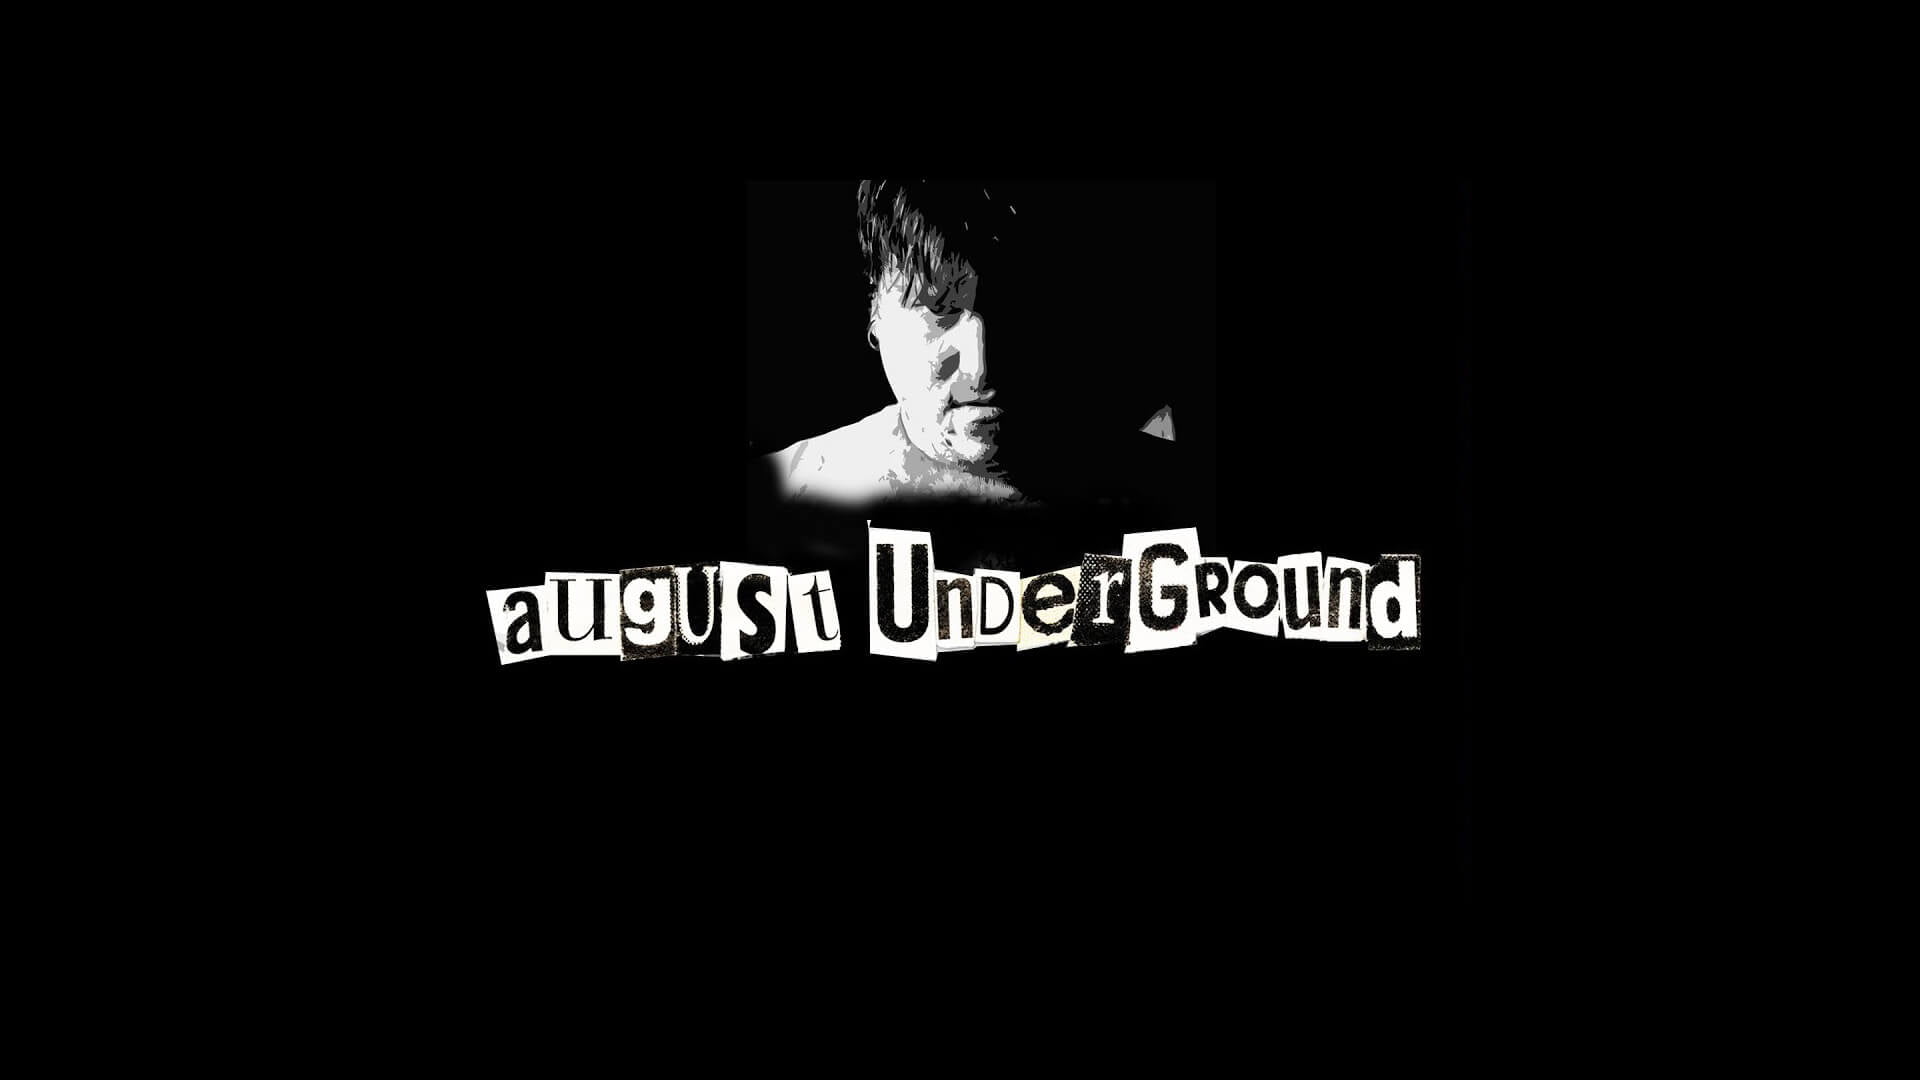 August Underground 2001